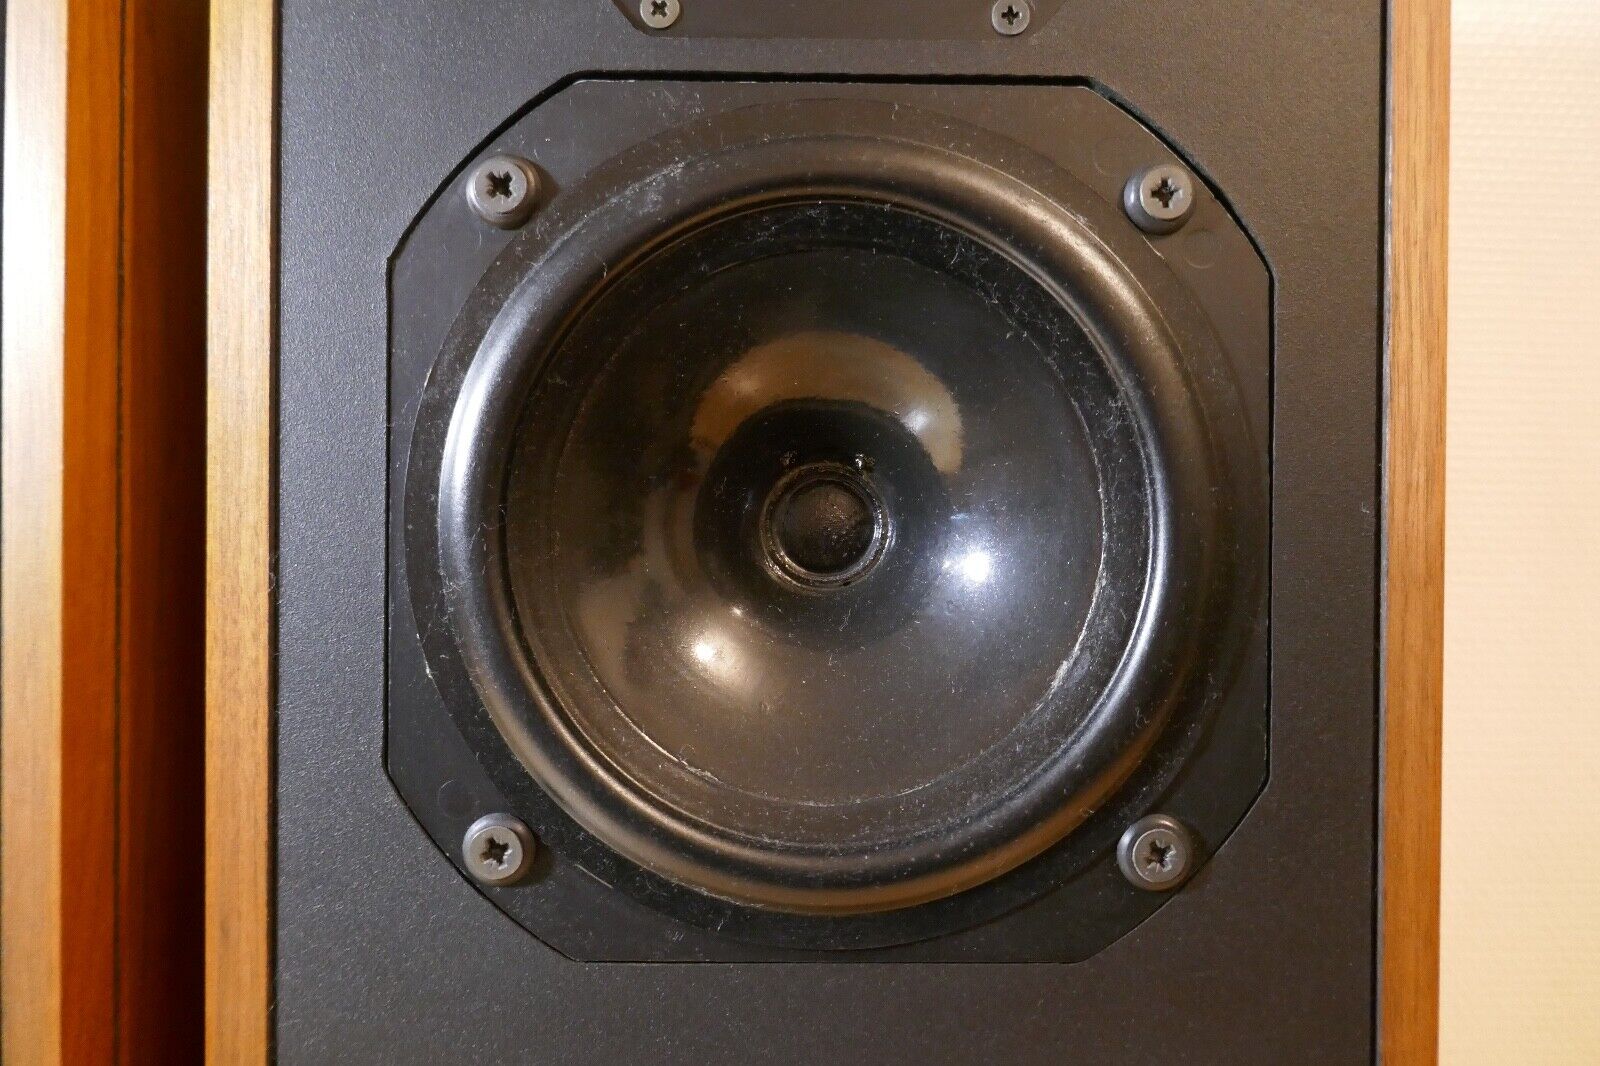 enceintes speakers bowers Wilkins dm14 vintage occasion